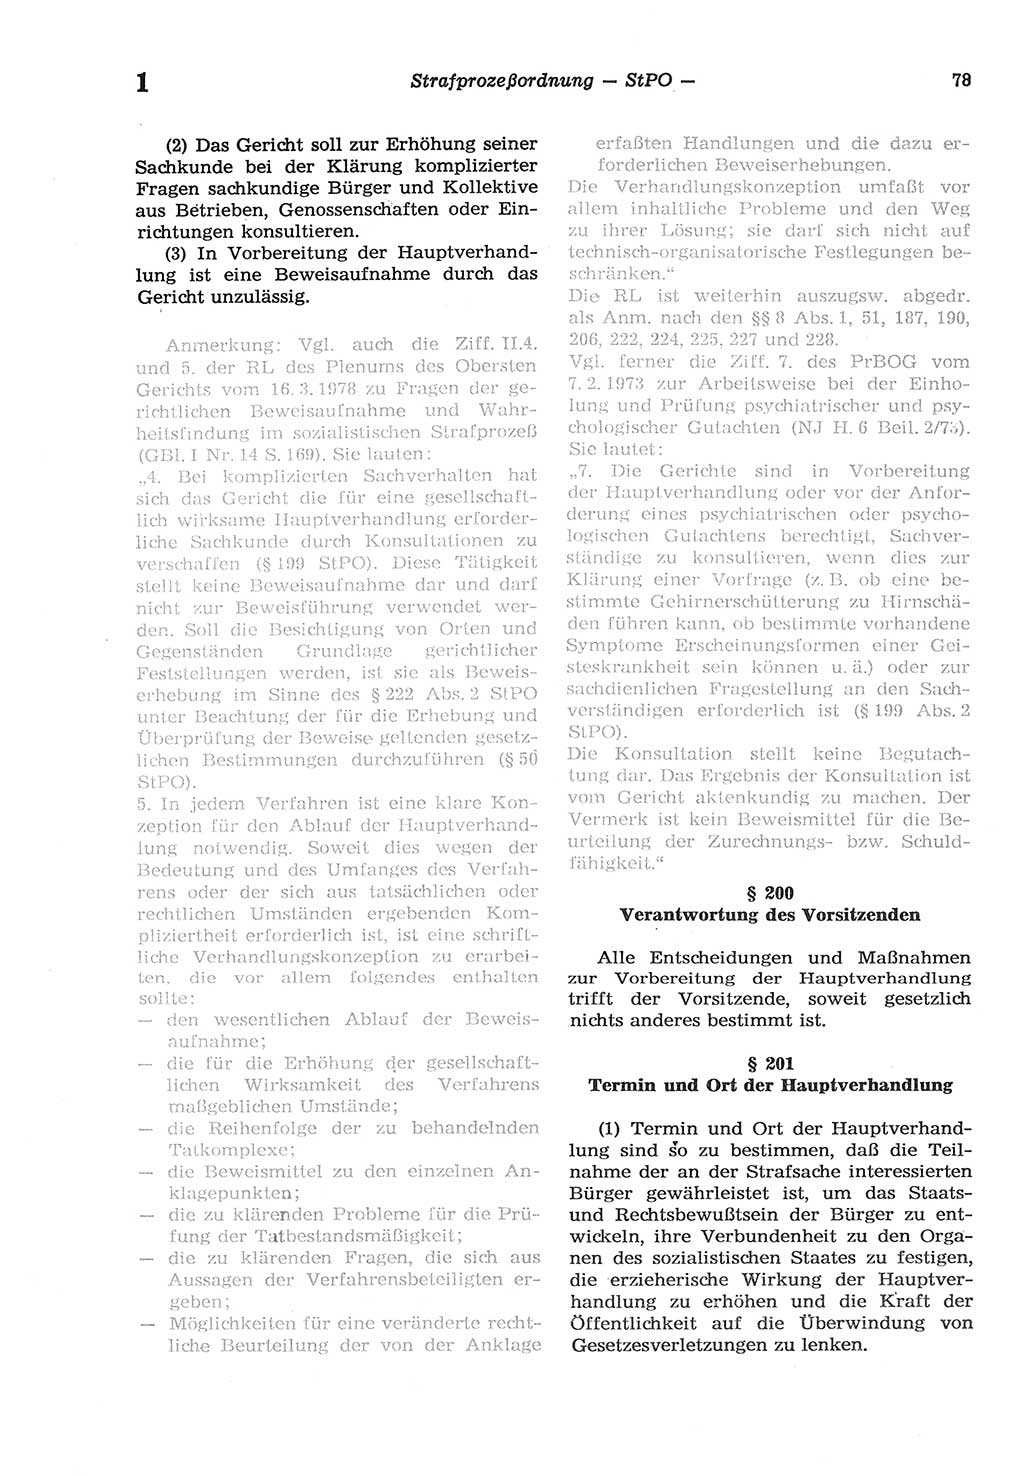 Strafprozeßordnung (StPO) der Deutschen Demokratischen Republik (DDR) sowie angrenzende Gesetze und Bestimmungen 1977, Seite 78 (StPO DDR Ges. Best. 1977, S. 78)